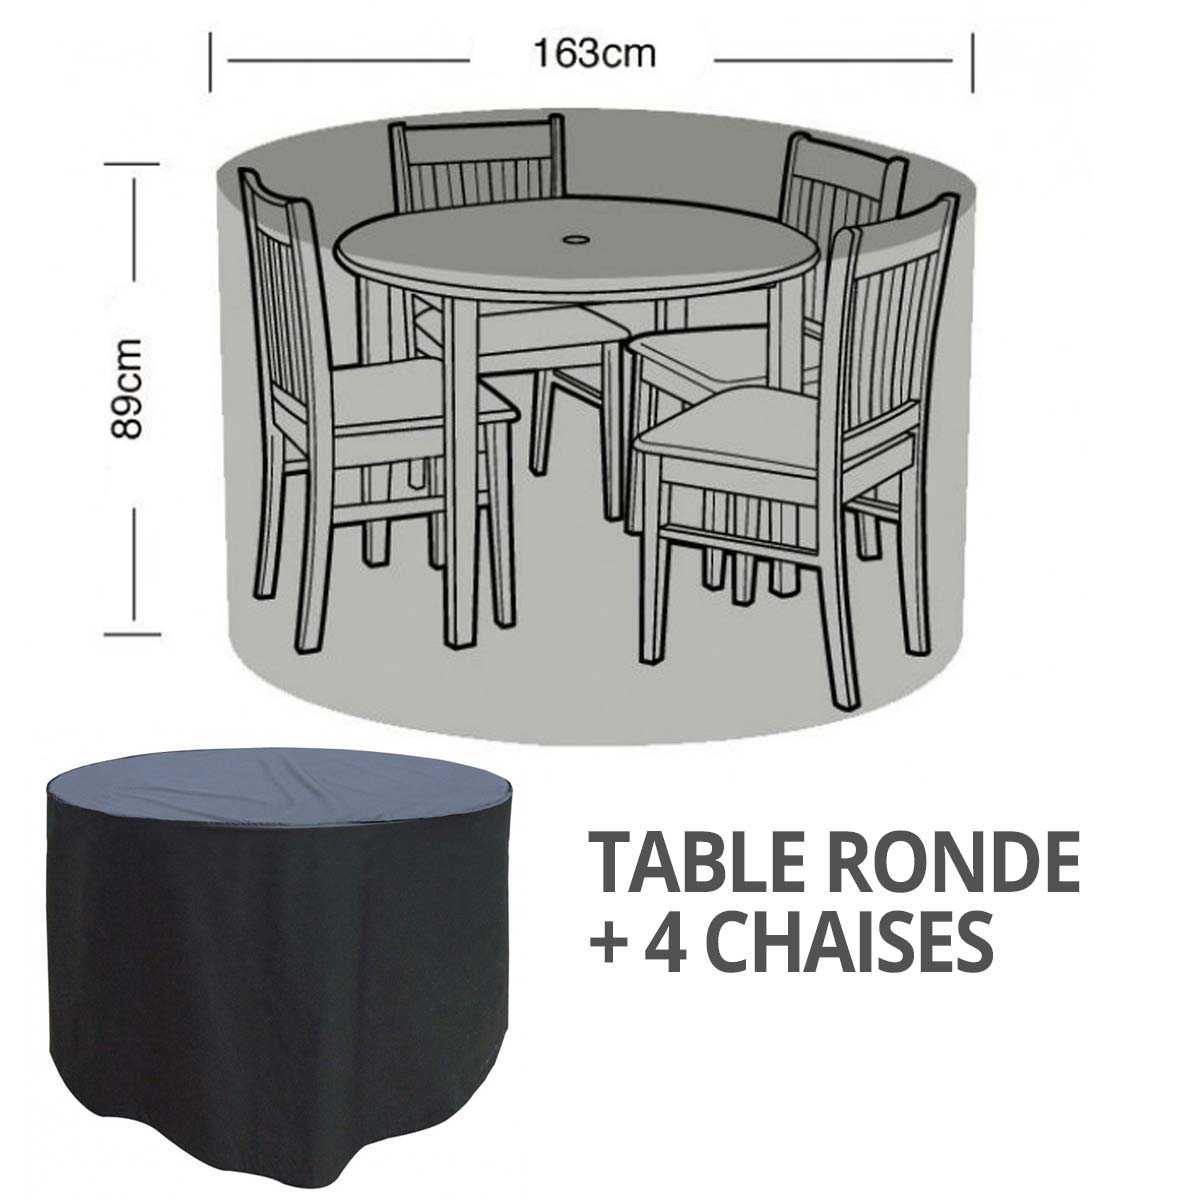 Housse bâche protection table ronde + 4 chaises diam. 163cm, vente